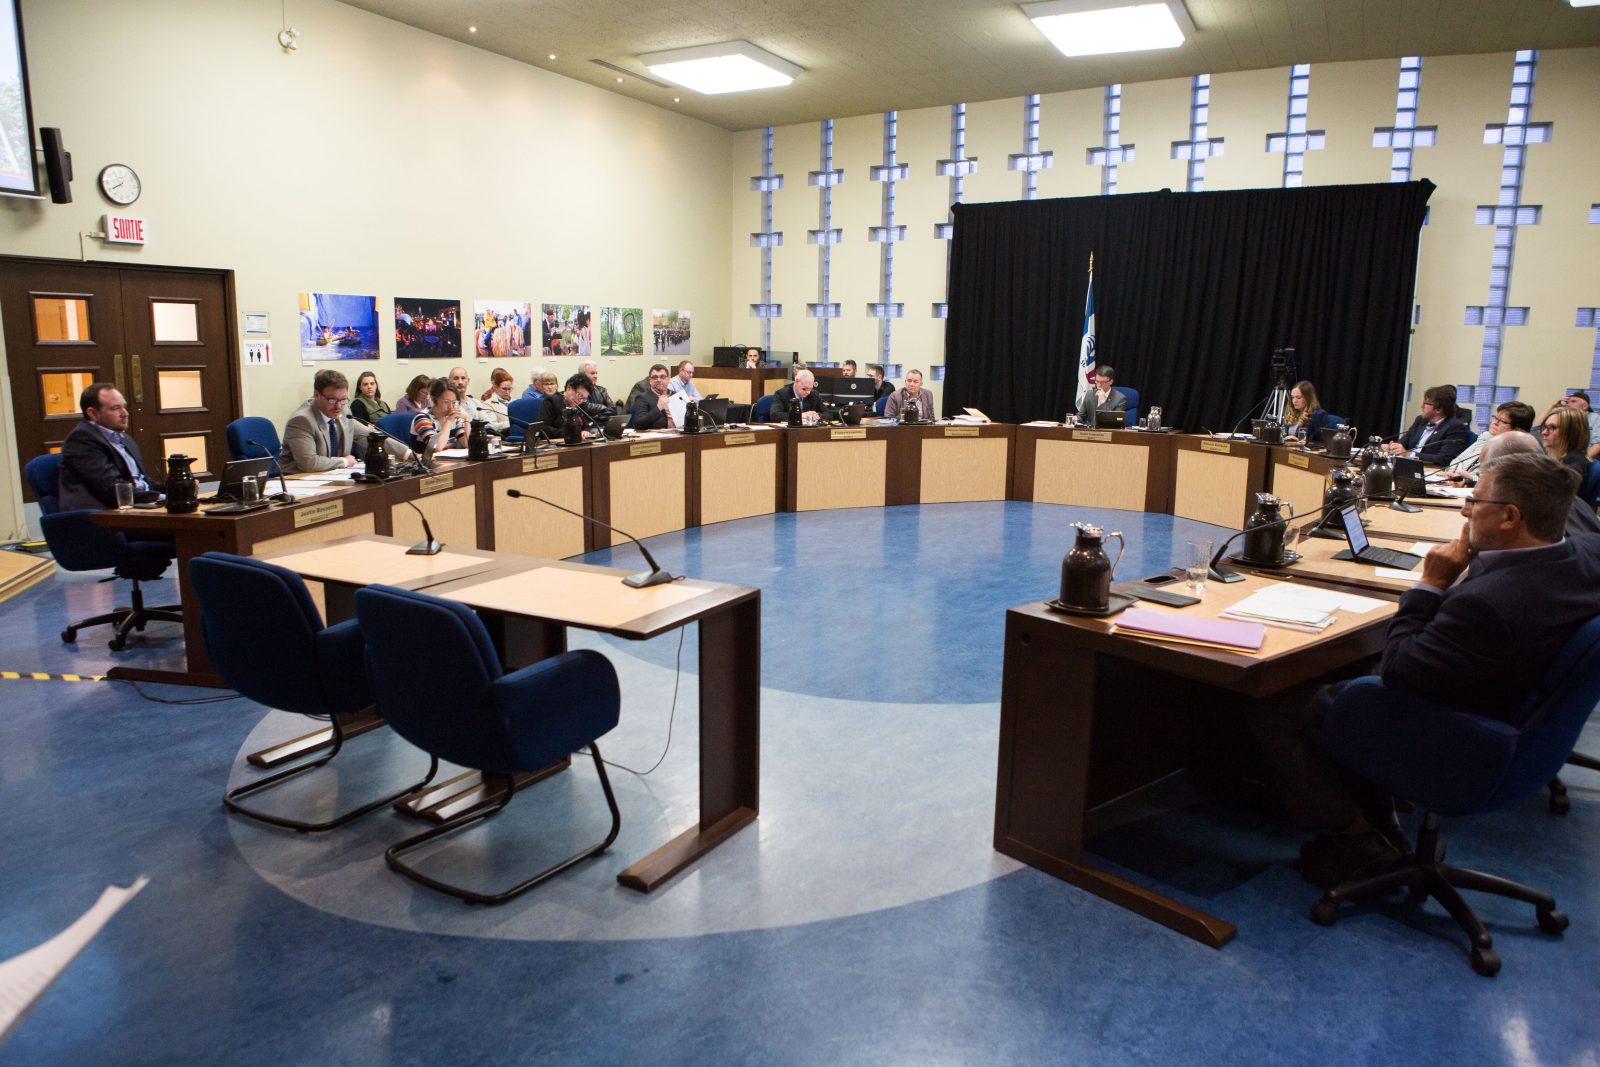 Conseil municipal de Saint-Jean-sur-Richelieu: le bloc des neuf affirme sa majorité